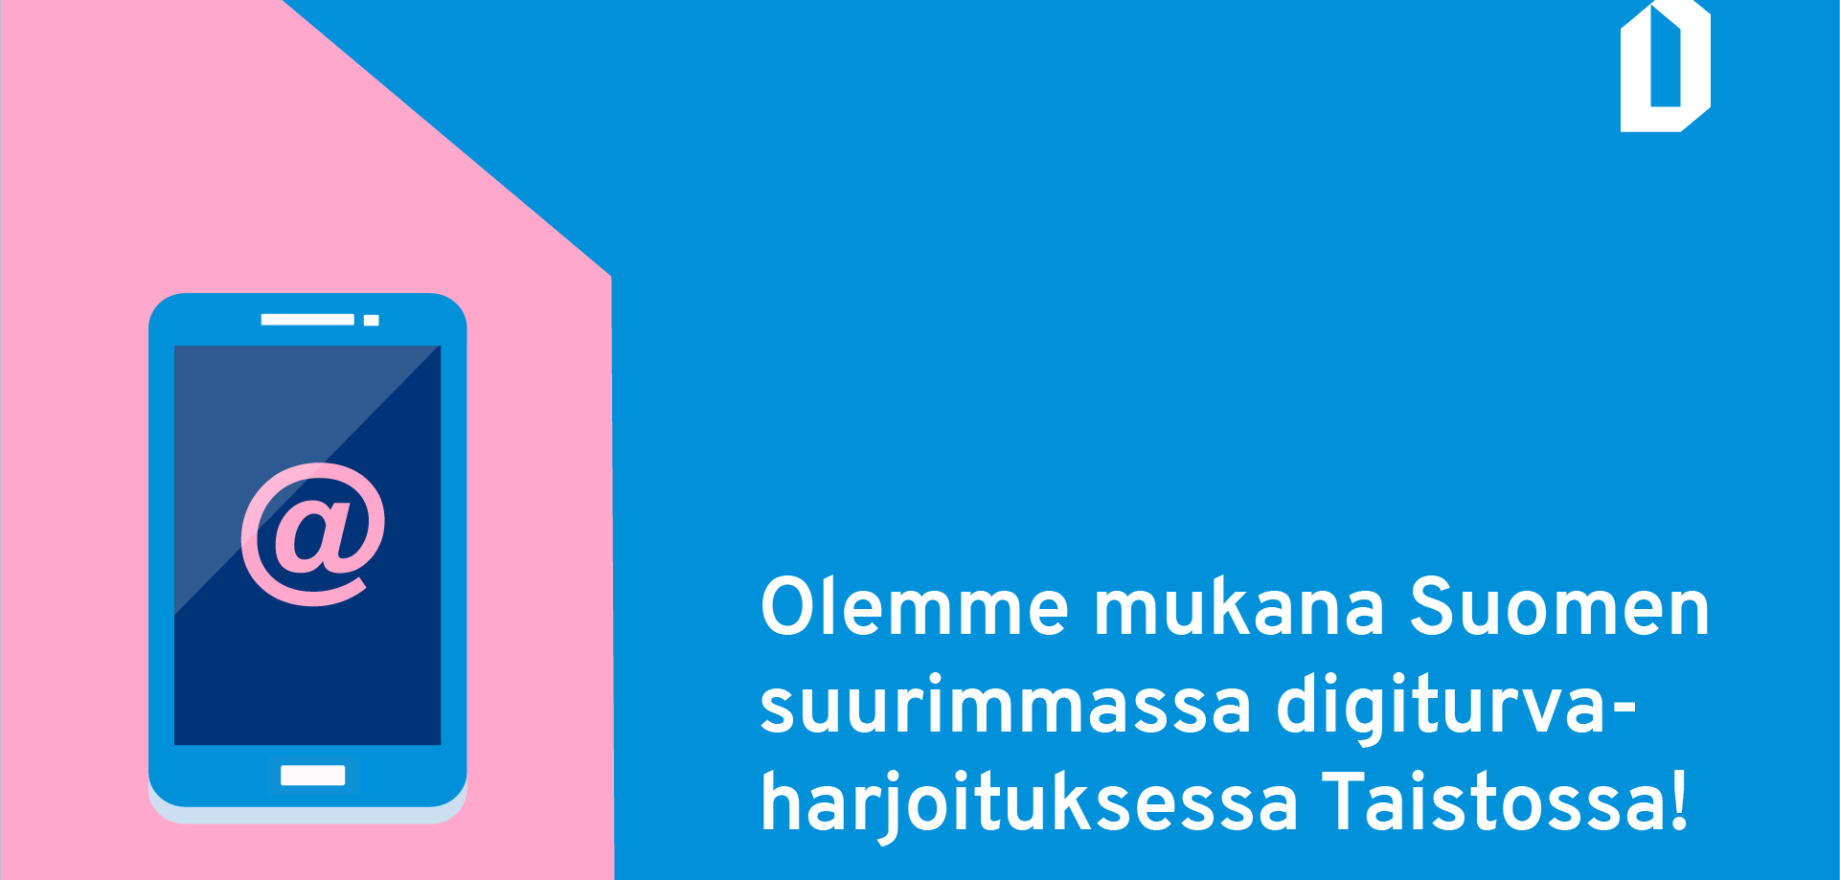 Taisto-harjoituksen tiedote: Olemme mukana Suomen suurimmassa digiturvaharjoituksessa Taistossa!